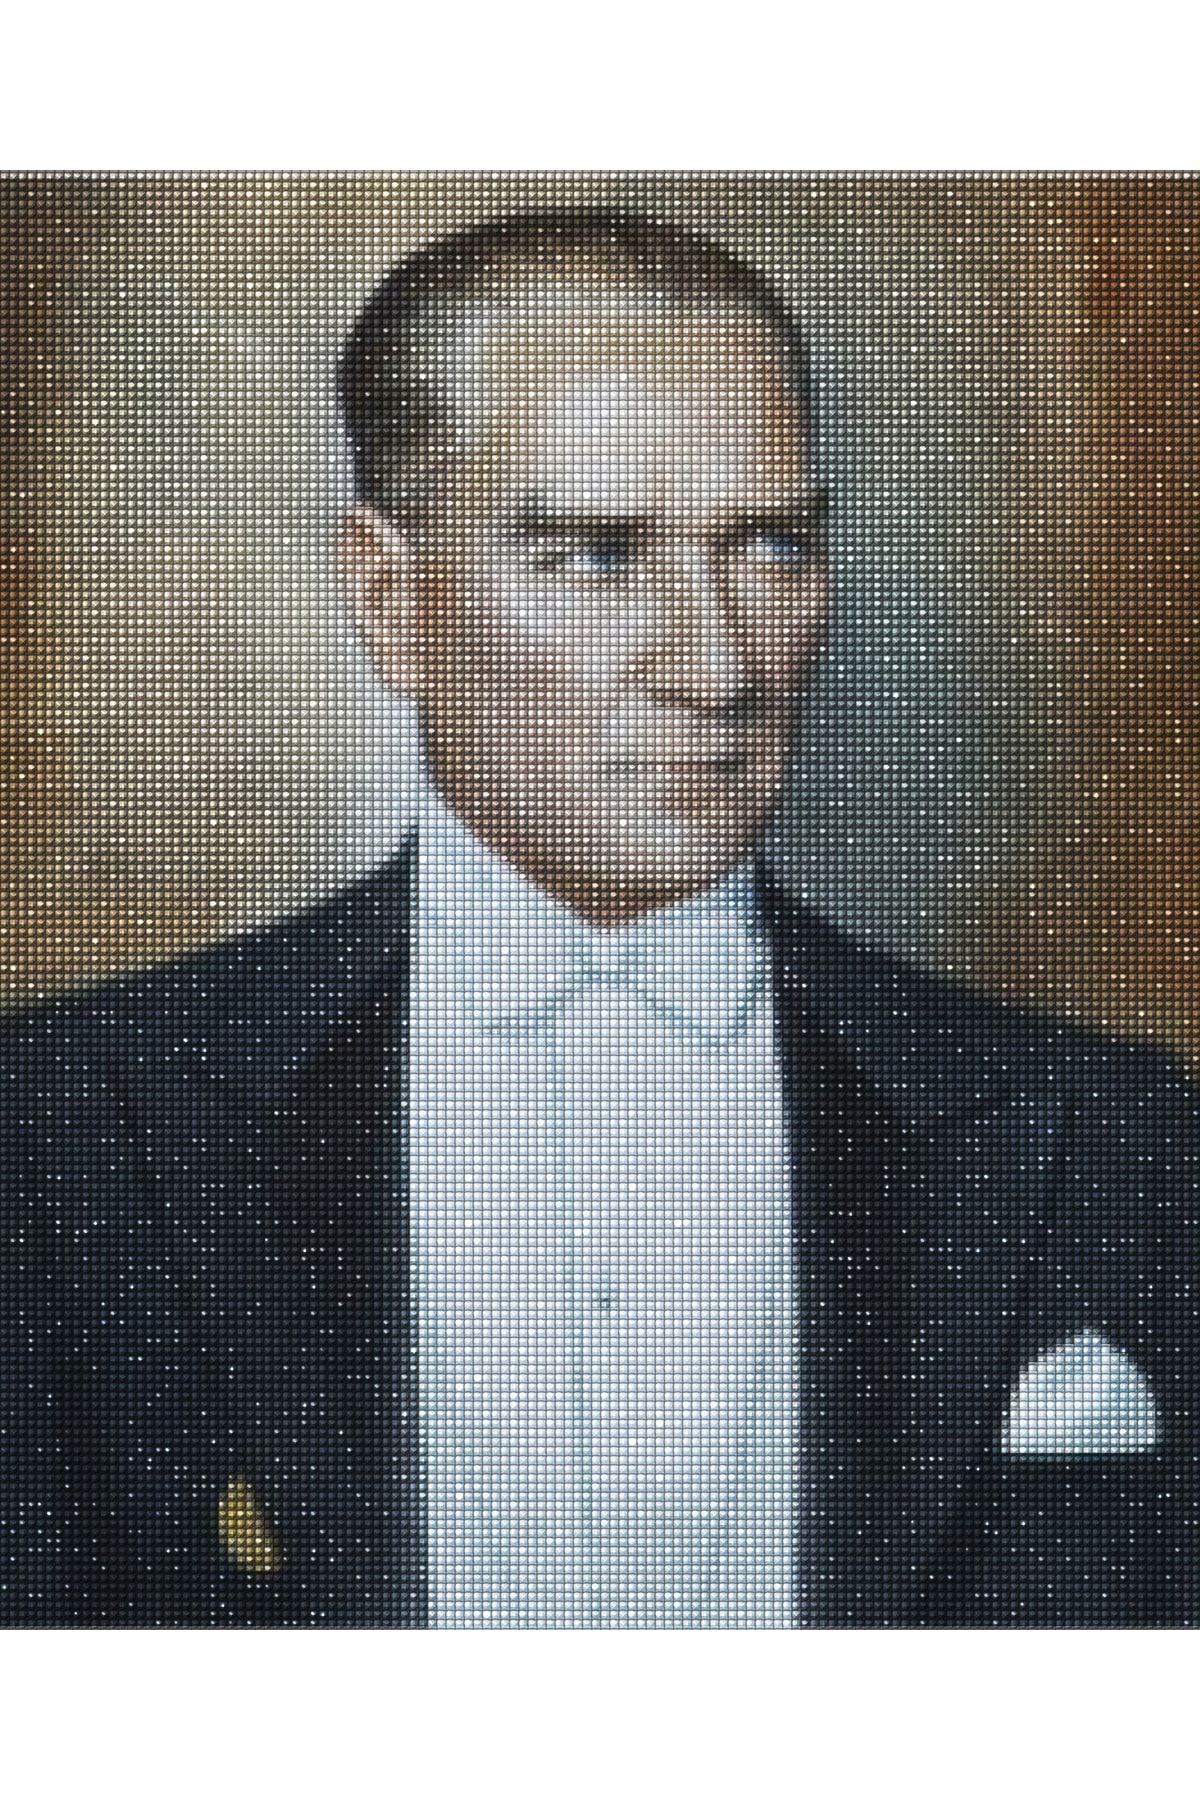 MAXİ M. K. Atatürk - Diamond Painting, Elmaslı Goblen, Mozaik Tablo, Elmas, Boncuk, Taş Işleme 40 X 50cm